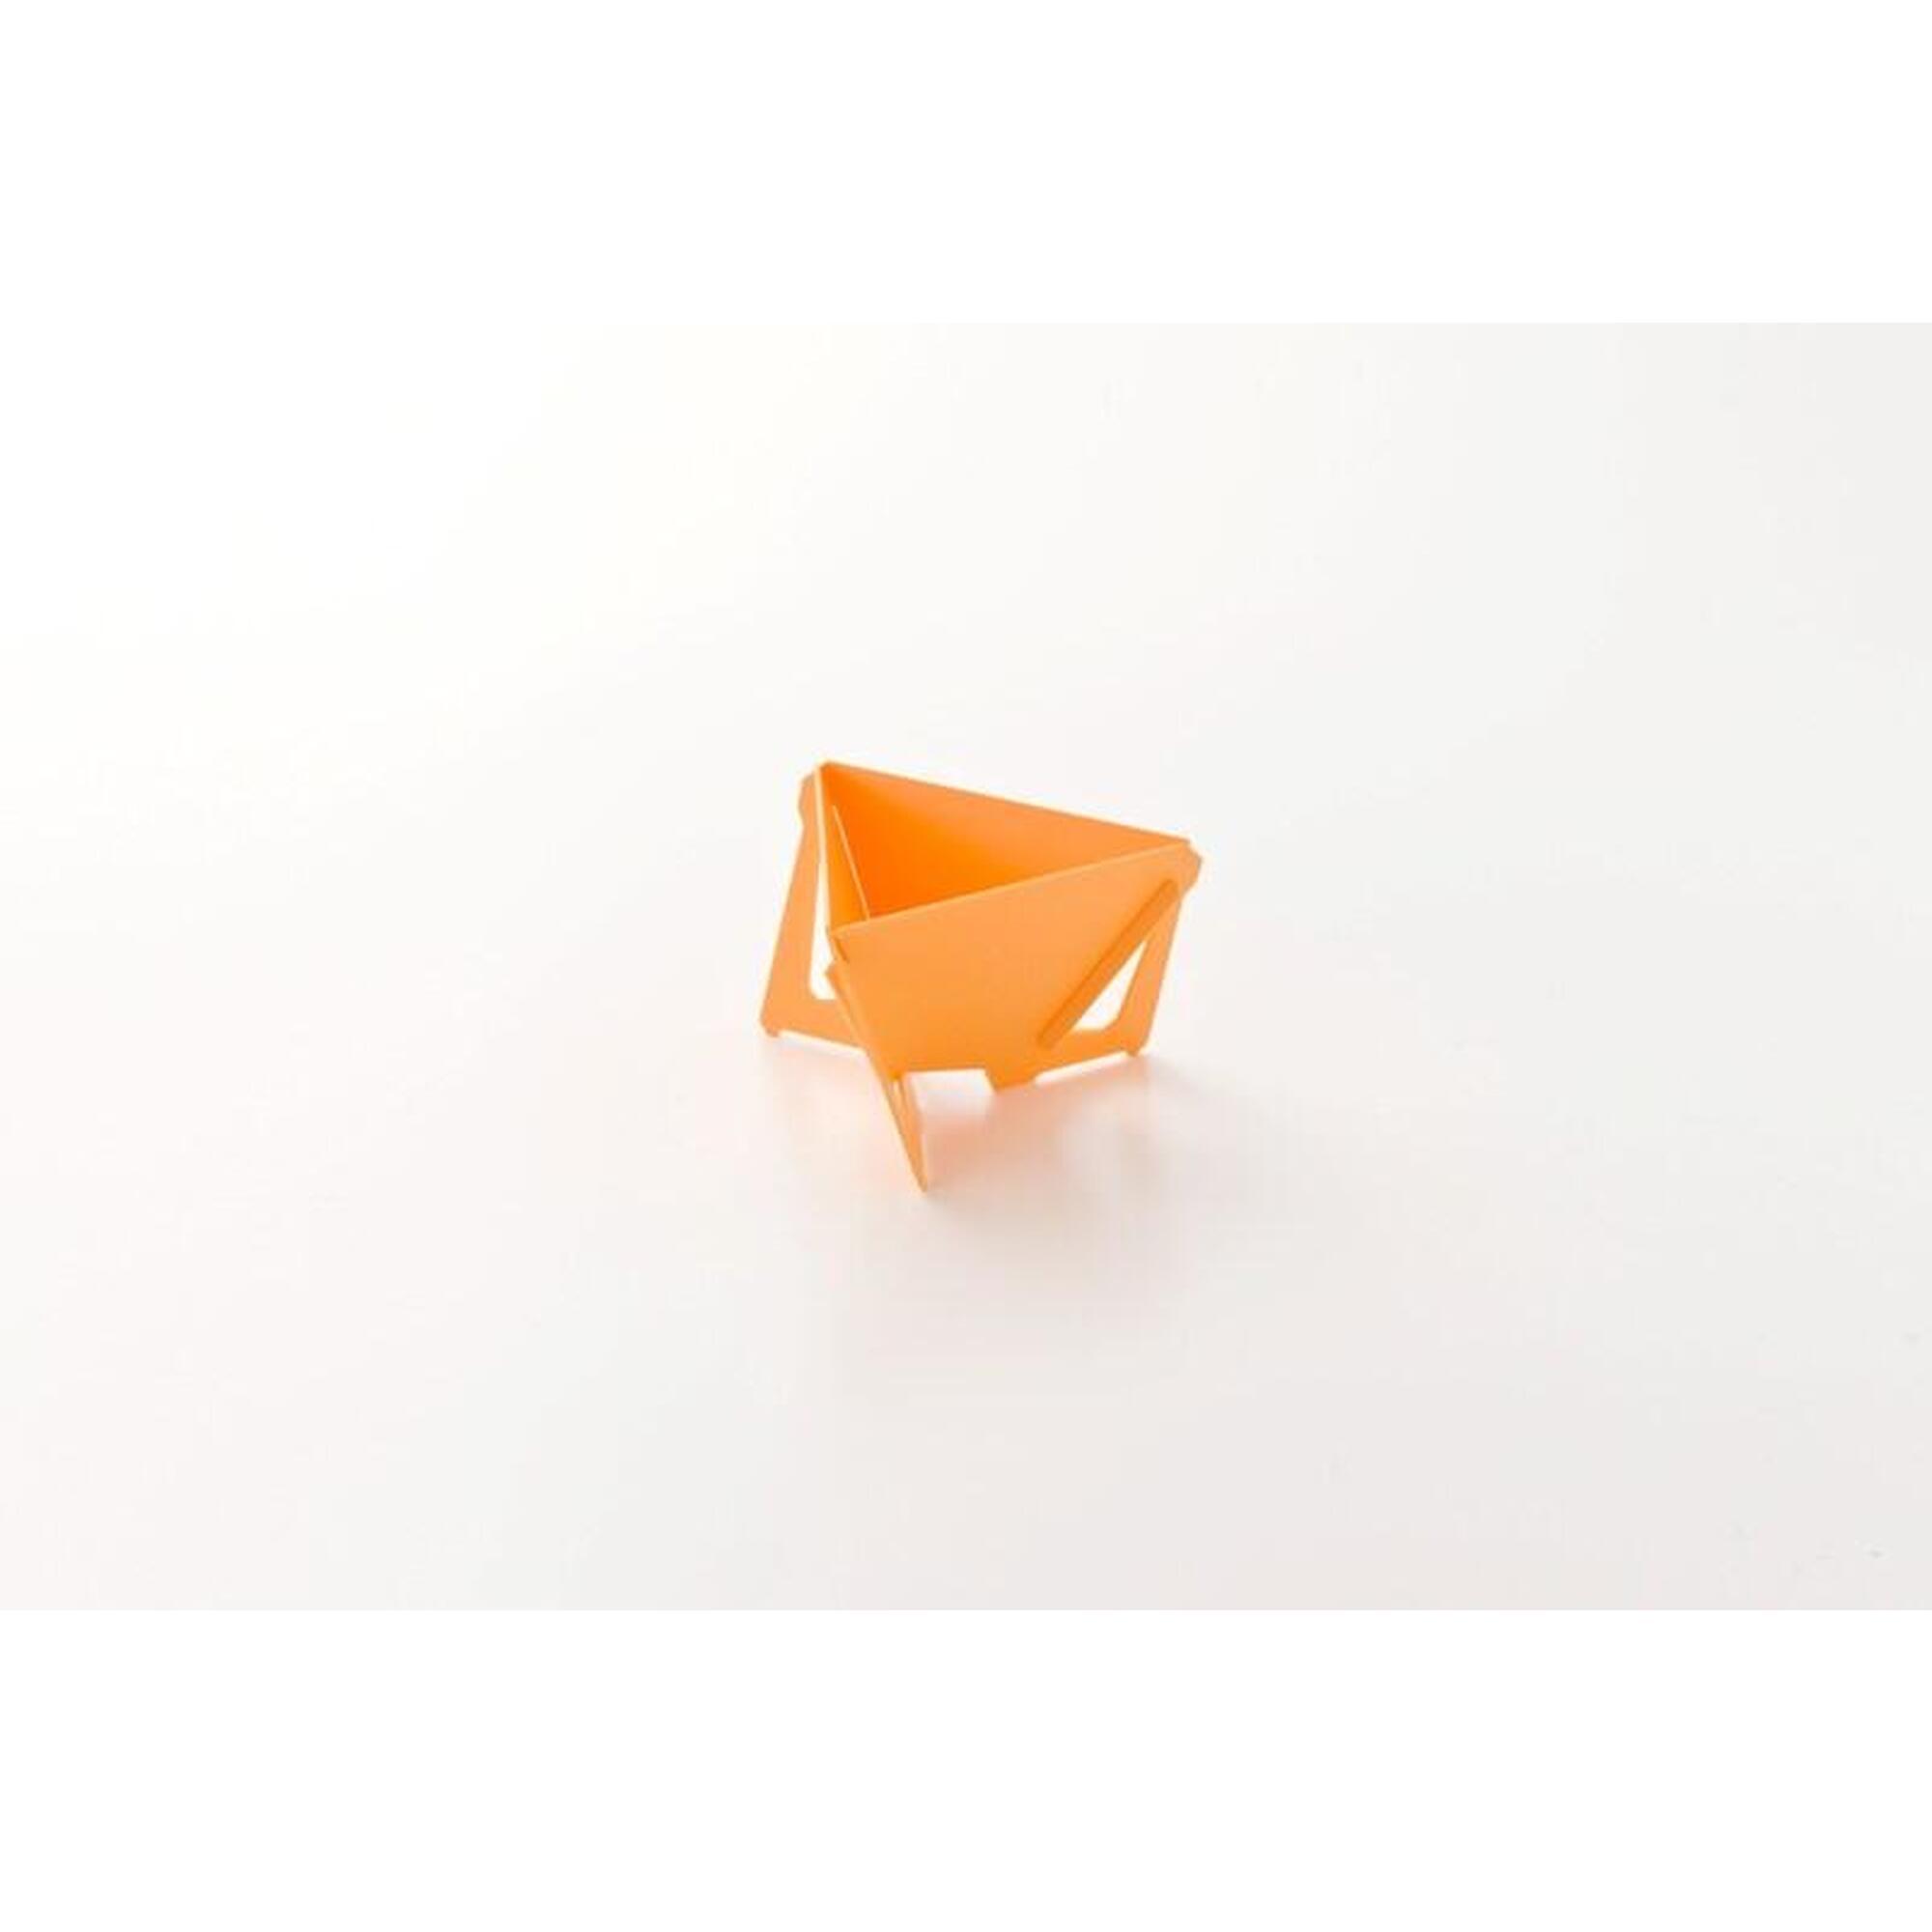 摺合式三角濾架 (細) - 黃色 及 Kōno 棉質濾紙 40張